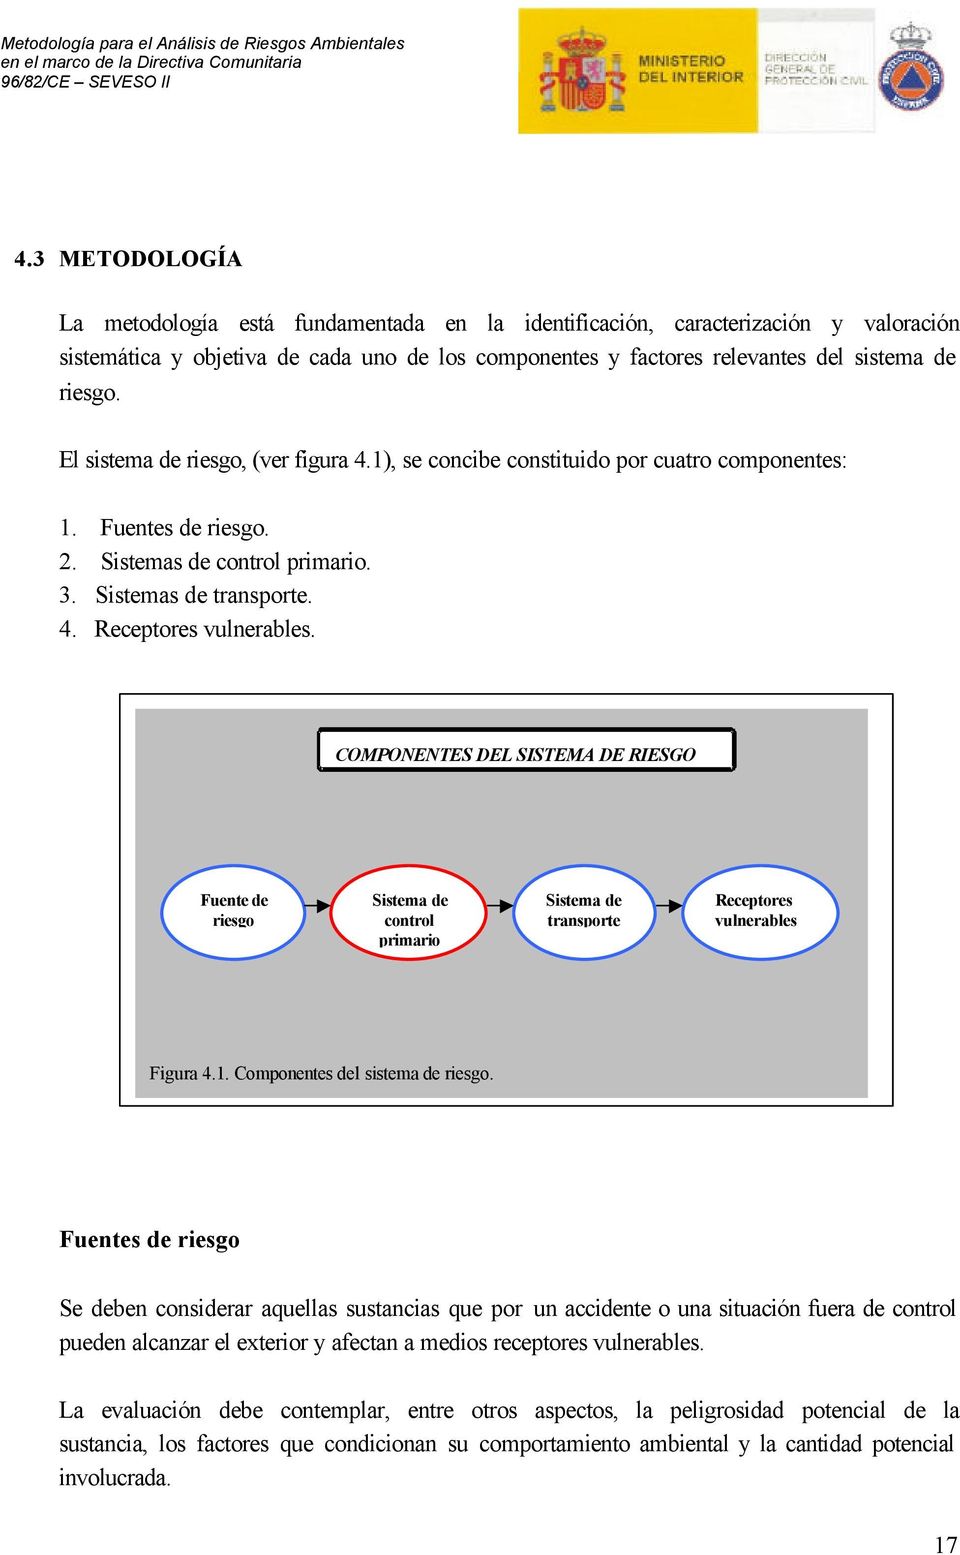 COMPONENTES DEL SISTEMA DE RIESGO Fuente de riesgo Sistema de control primario Sistema de transporte Receptores vulnerables Figura 4.1. Componentes del sistema de riesgo.